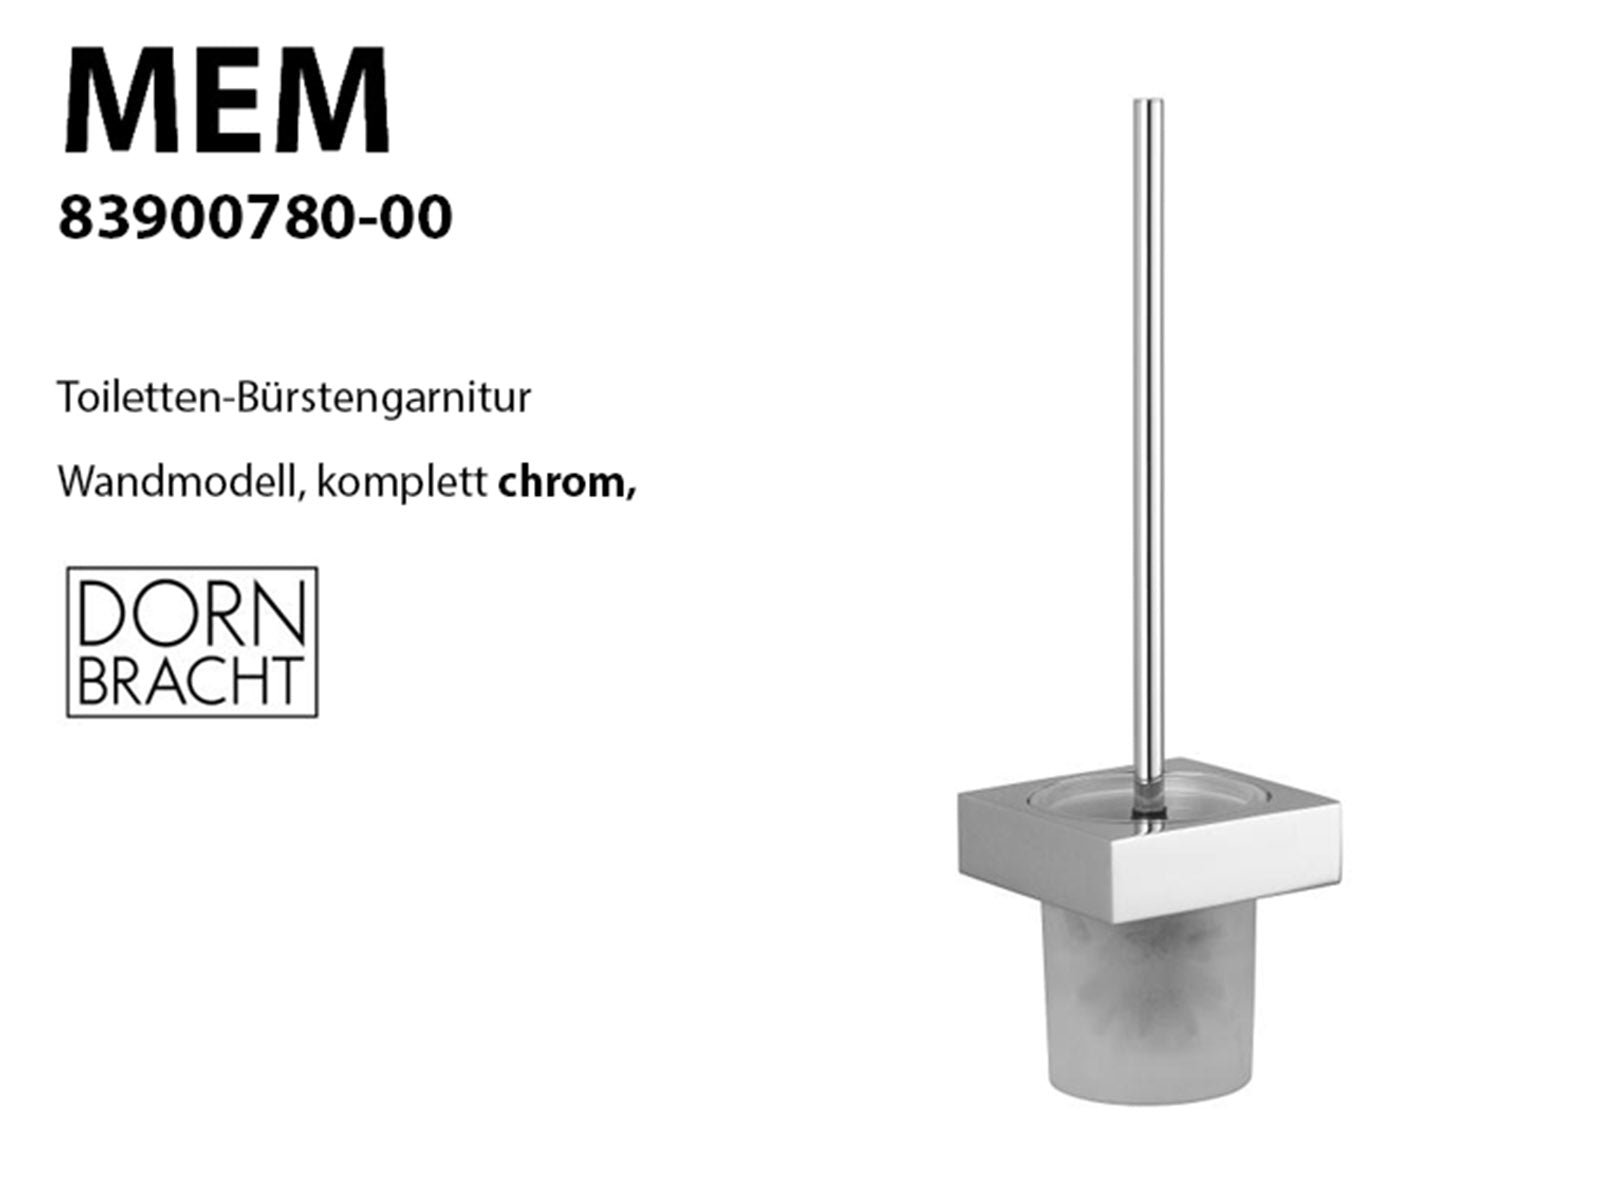 Dornbracht, MEM-83900780-00-Toiletten-Bürstengarnitur, Wandmodell, chrom